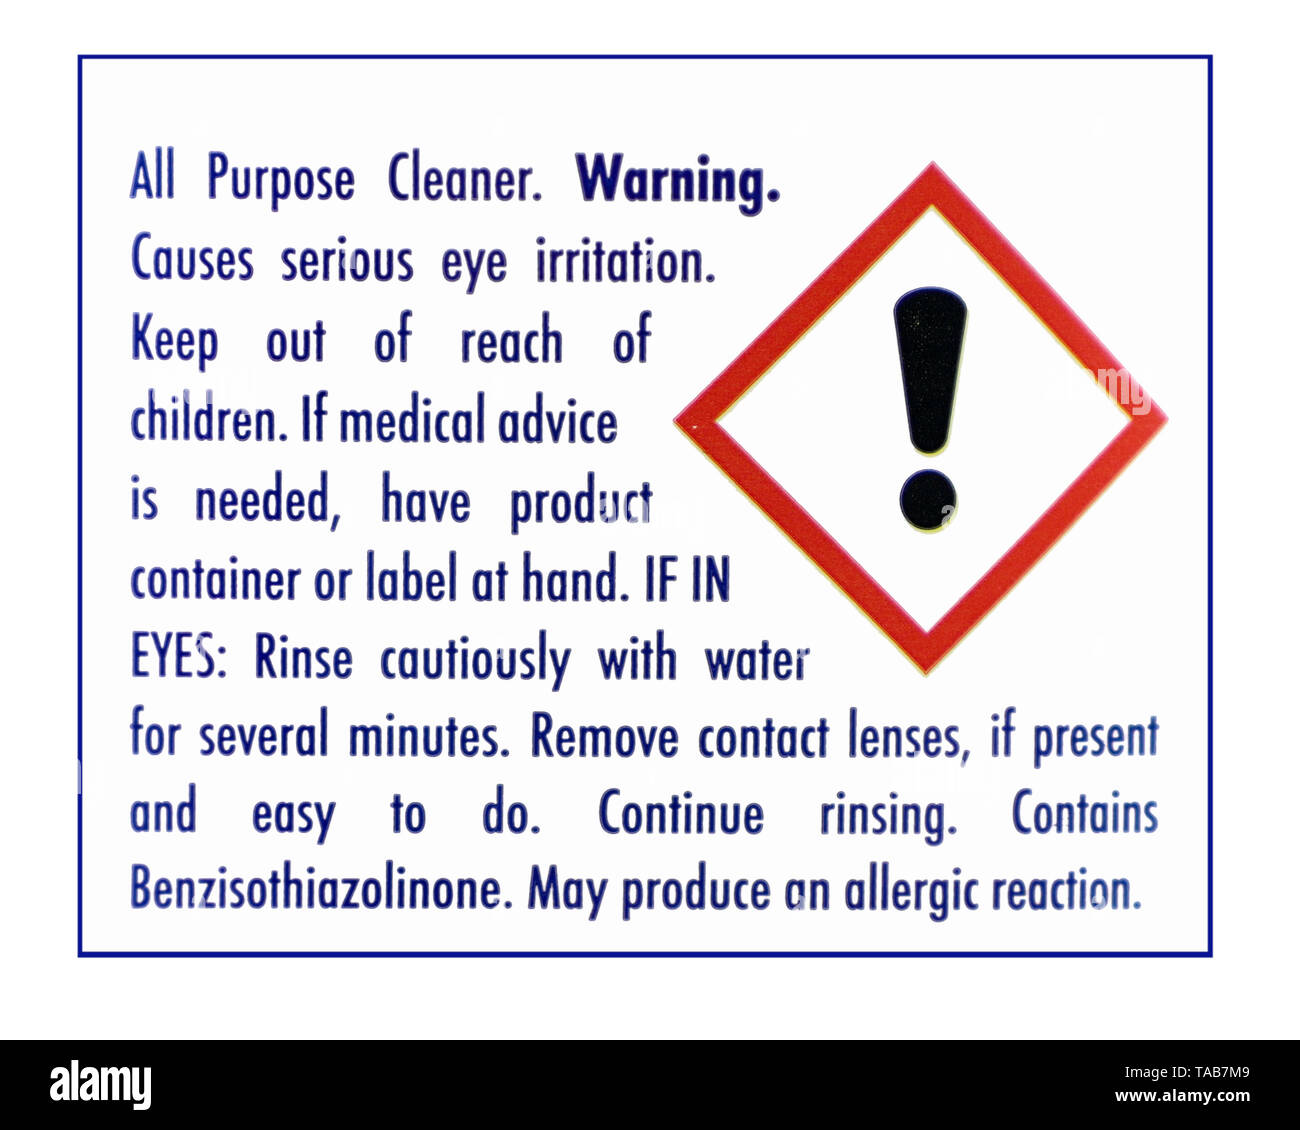 Etiqueta de advertencia de detergente doméstico aislado sobre un fondo blanco. Foto de stock